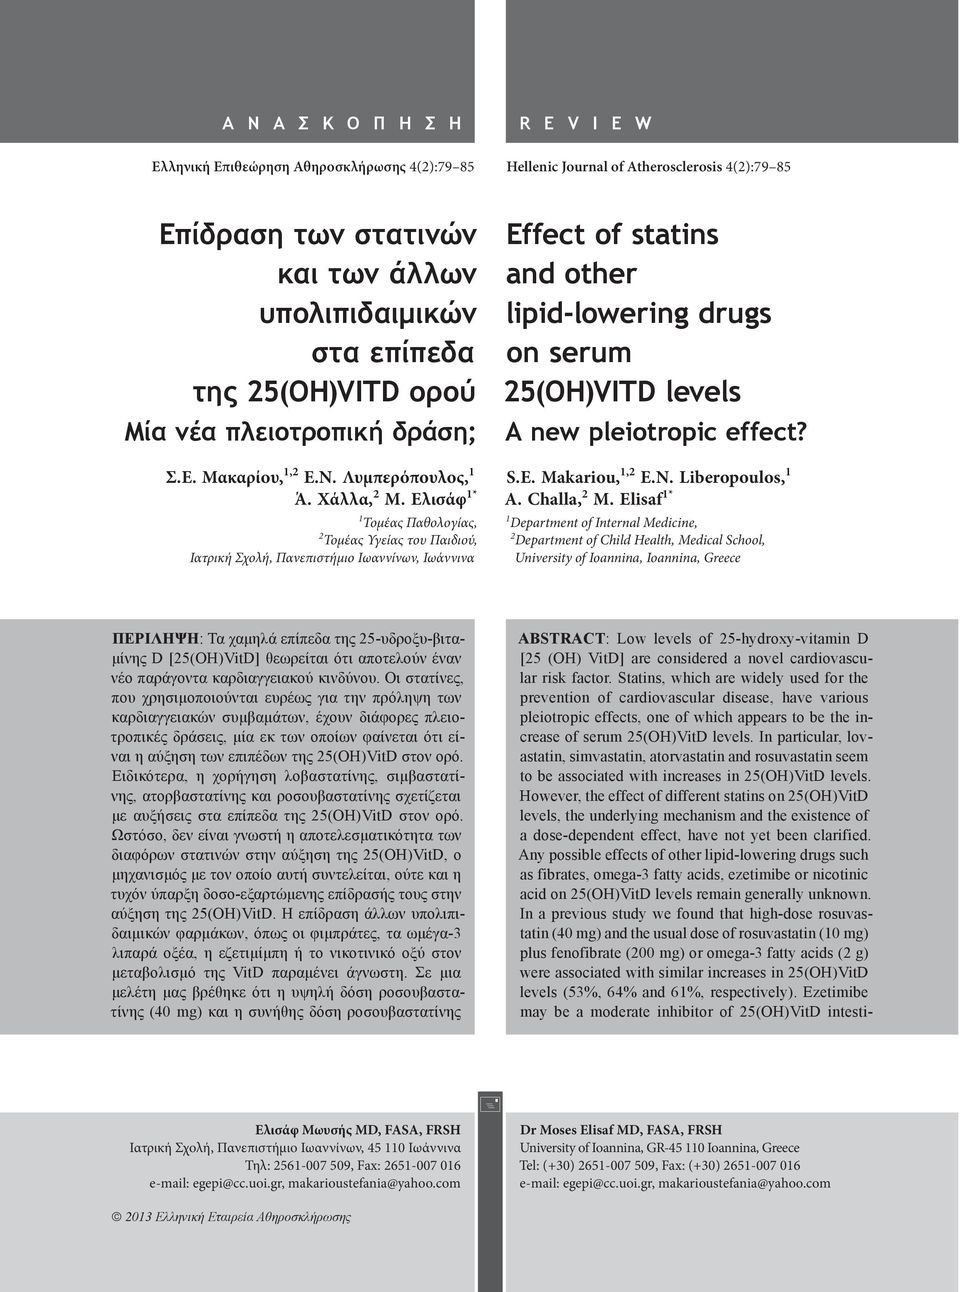 Ελισάφ 1* 1 Τομέας Παθολογίας, 2 Τομέας Υγείας του Παιδιού, Ιατρική Σχολή, Πανεπιστήμιο Ιωαννίνων, Ιωάννινα Effect of statins and other lipid-lowering drugs on serum 25(OH)VITD levels A new